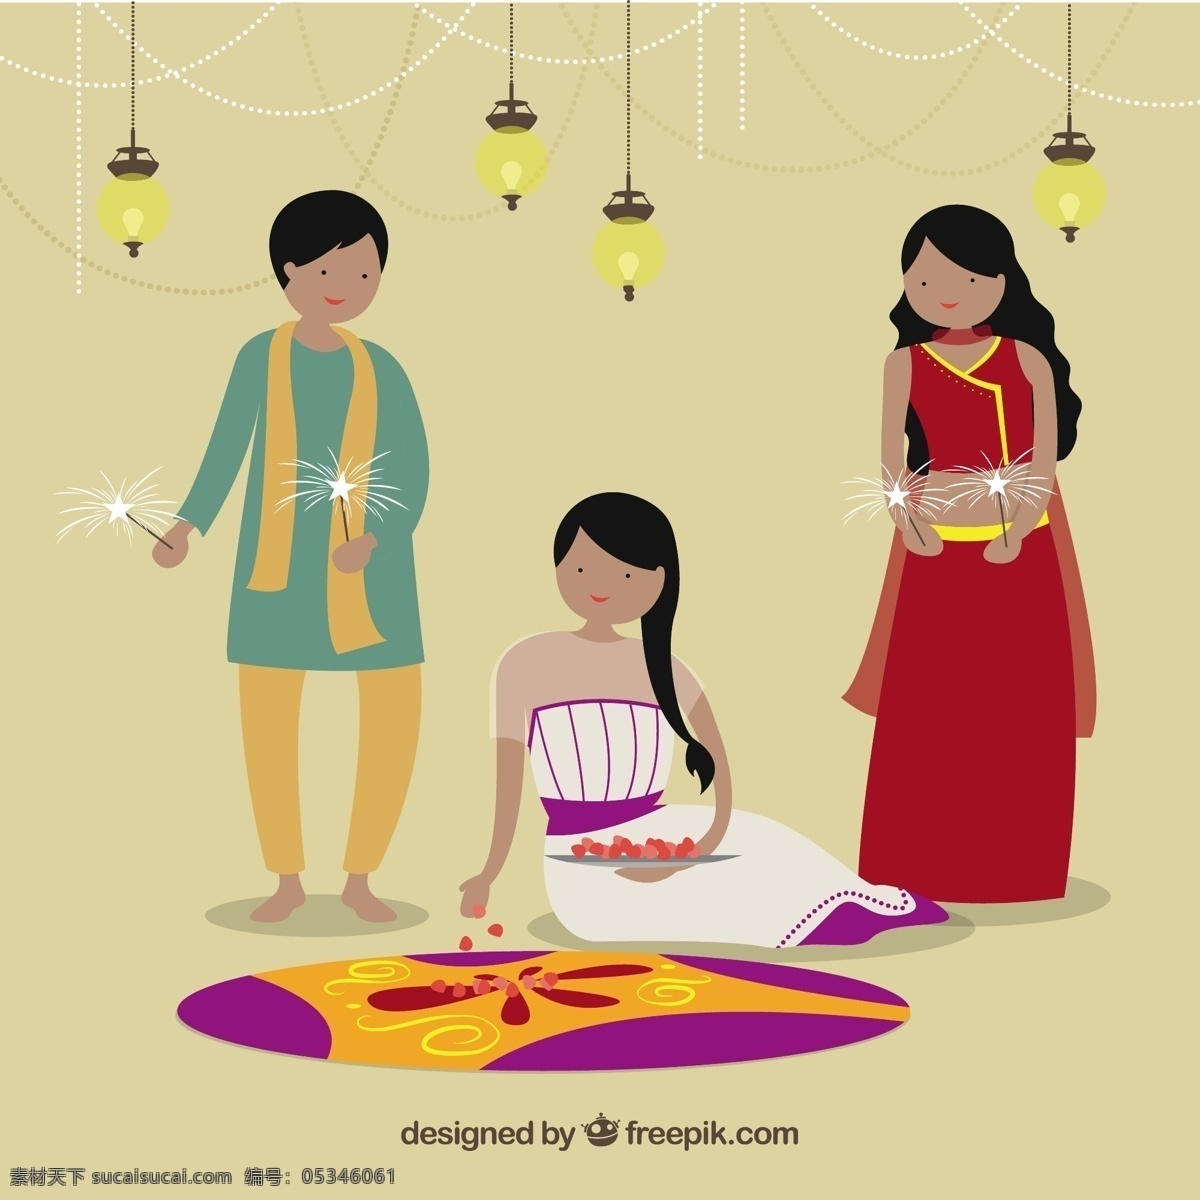 印度文化特征 特性 印度 文化 人物 传统 蜡烛 黄色